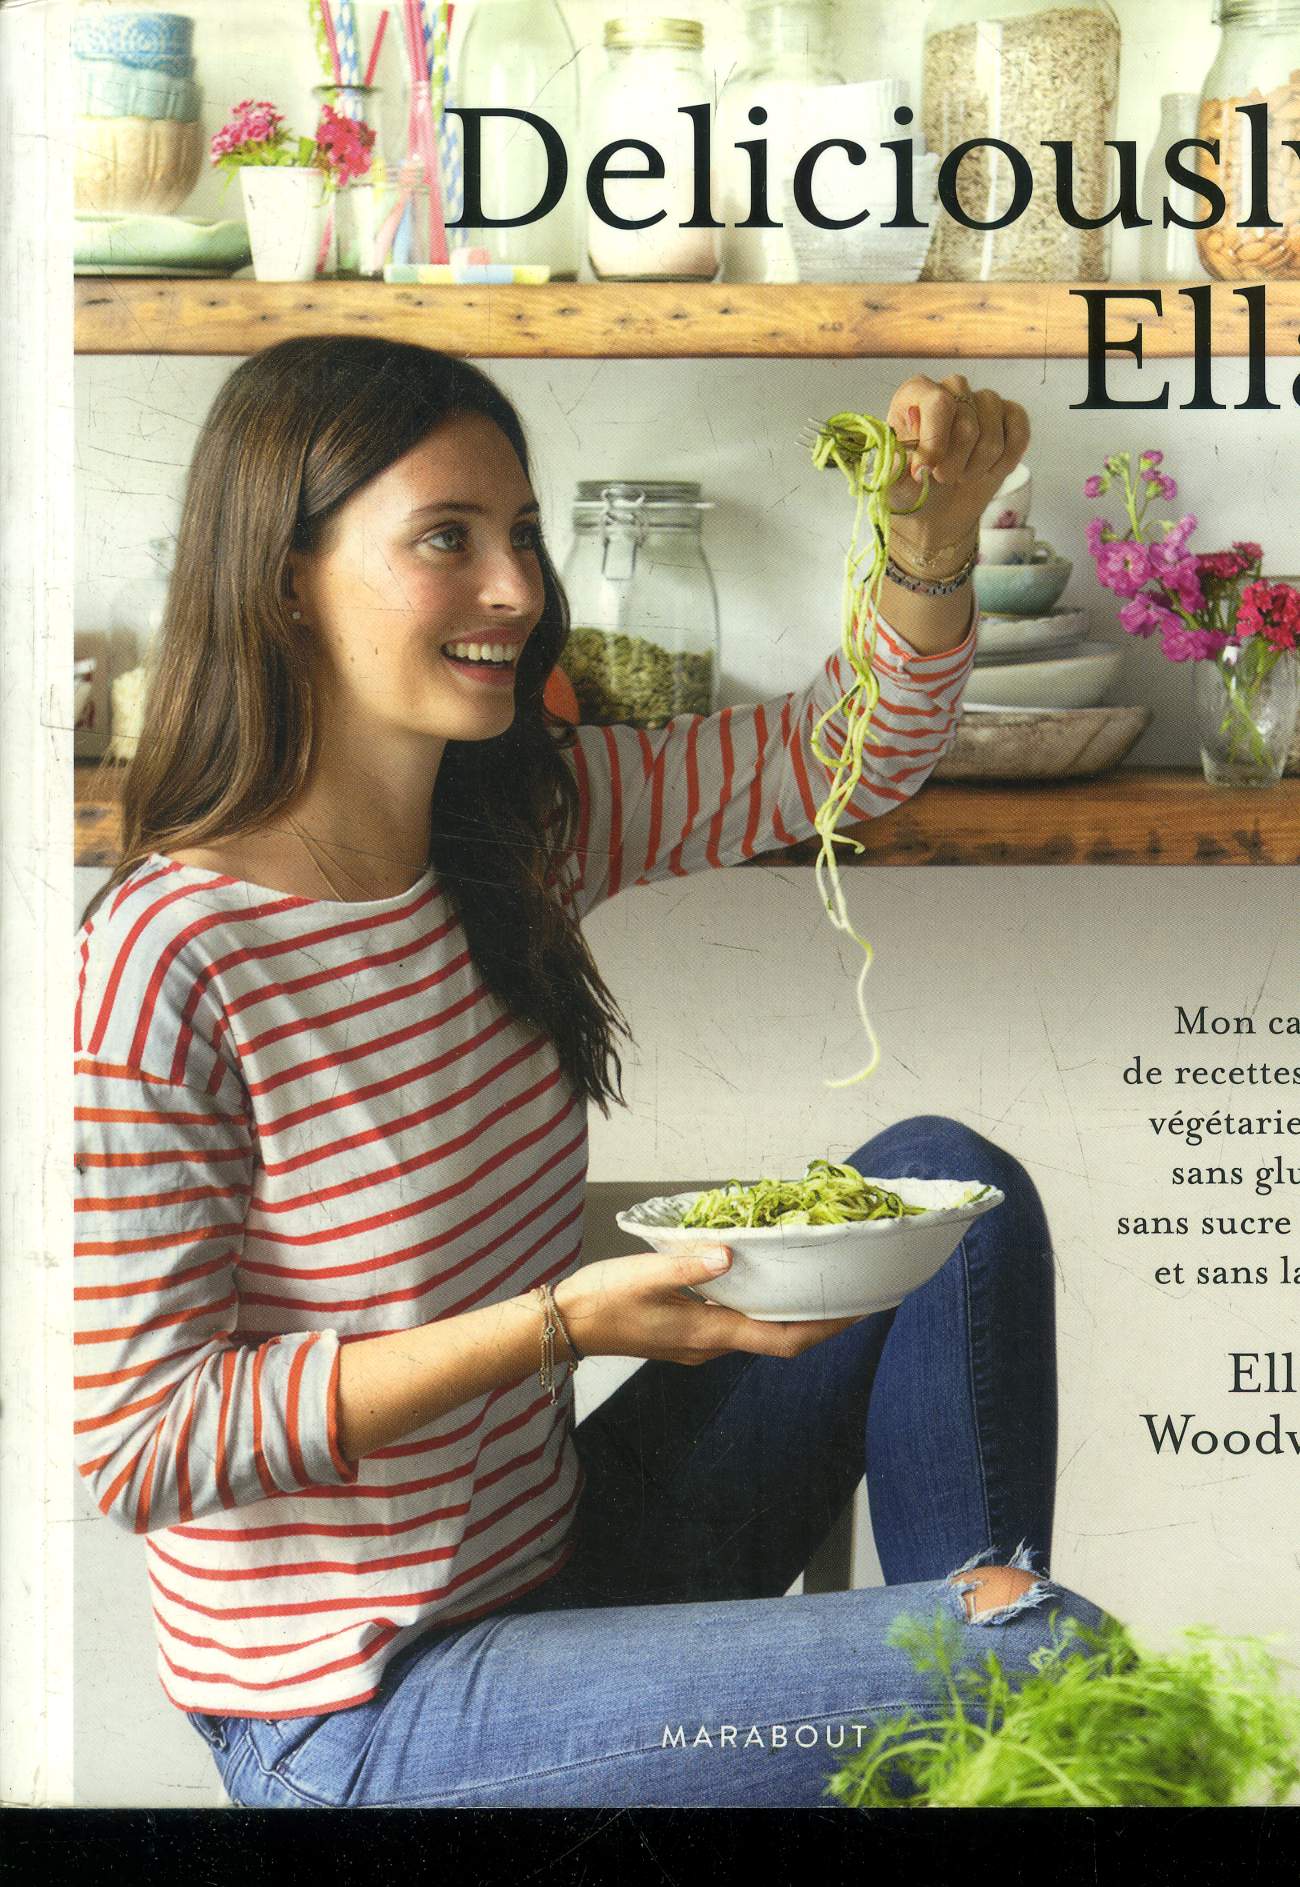 Deliciously Ella : Mon carnet de recettes green, vgtariennes, sans gluten, sans sucre raffin et sans lactose